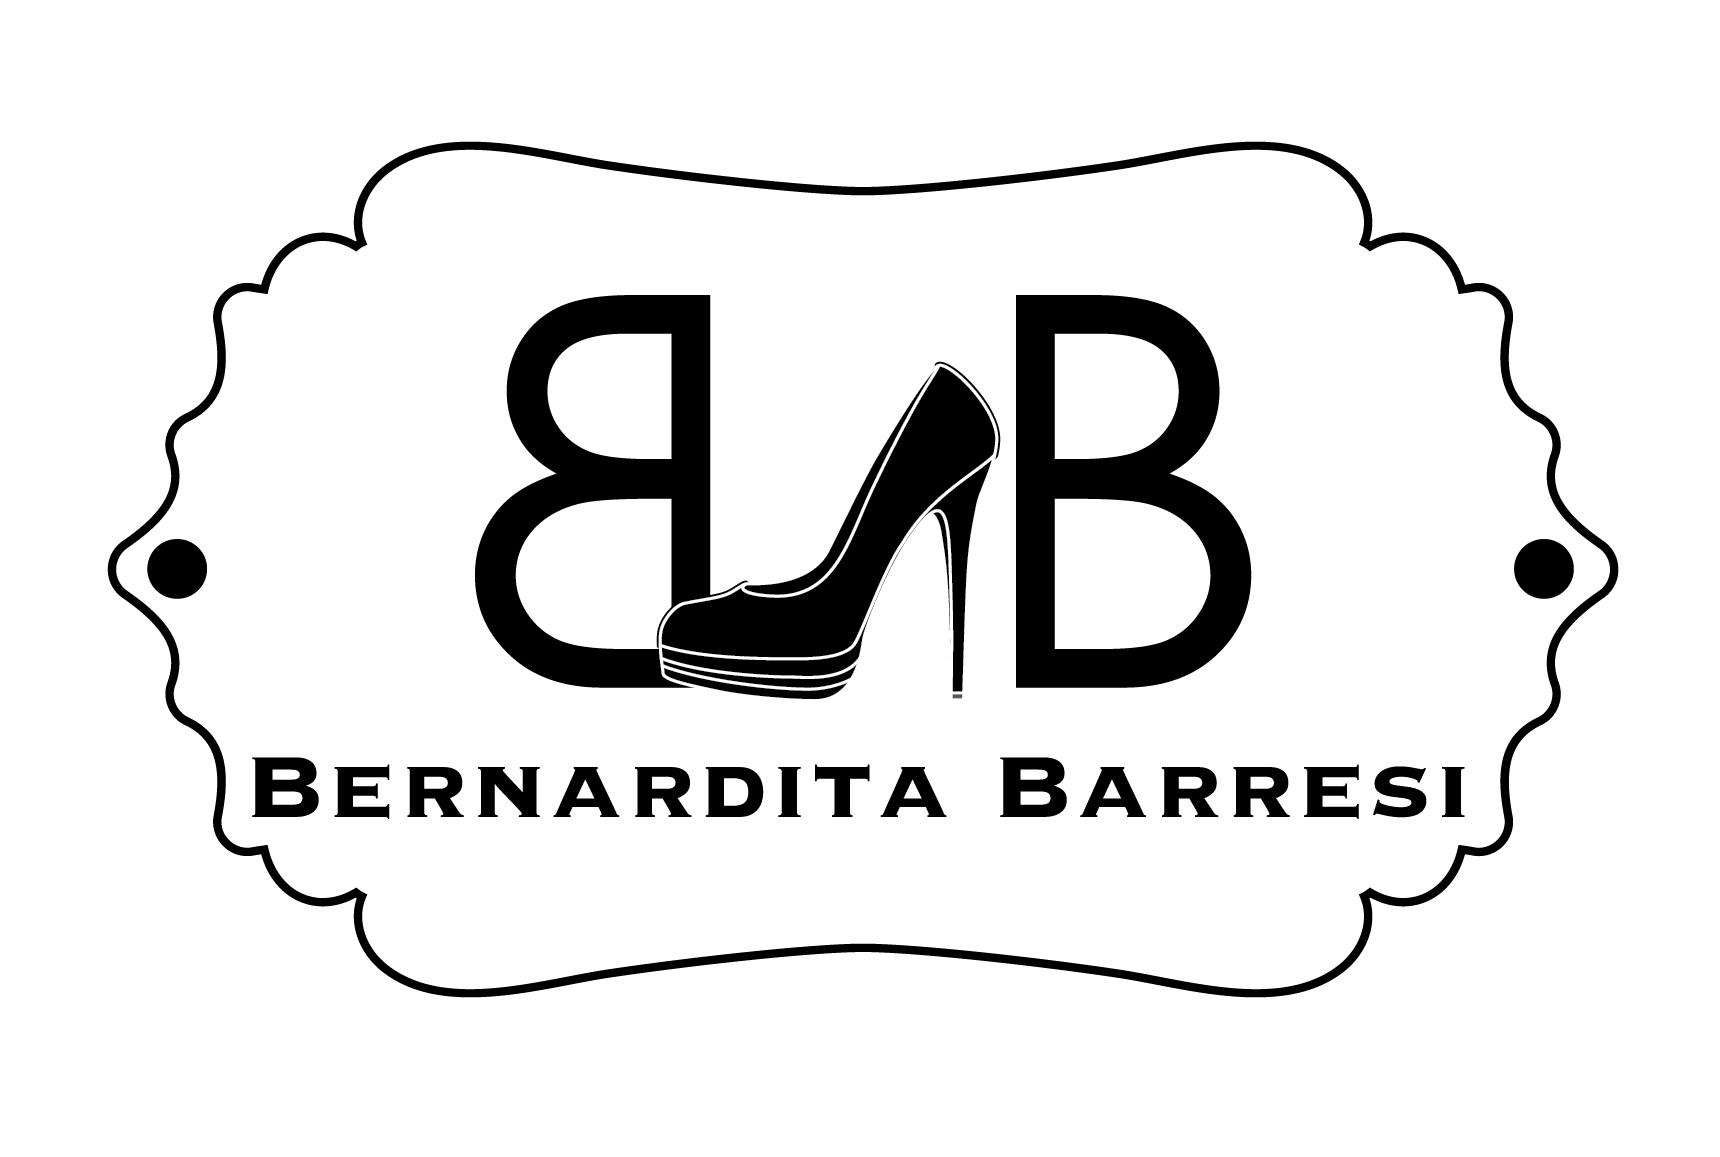 Bernardita Barresi